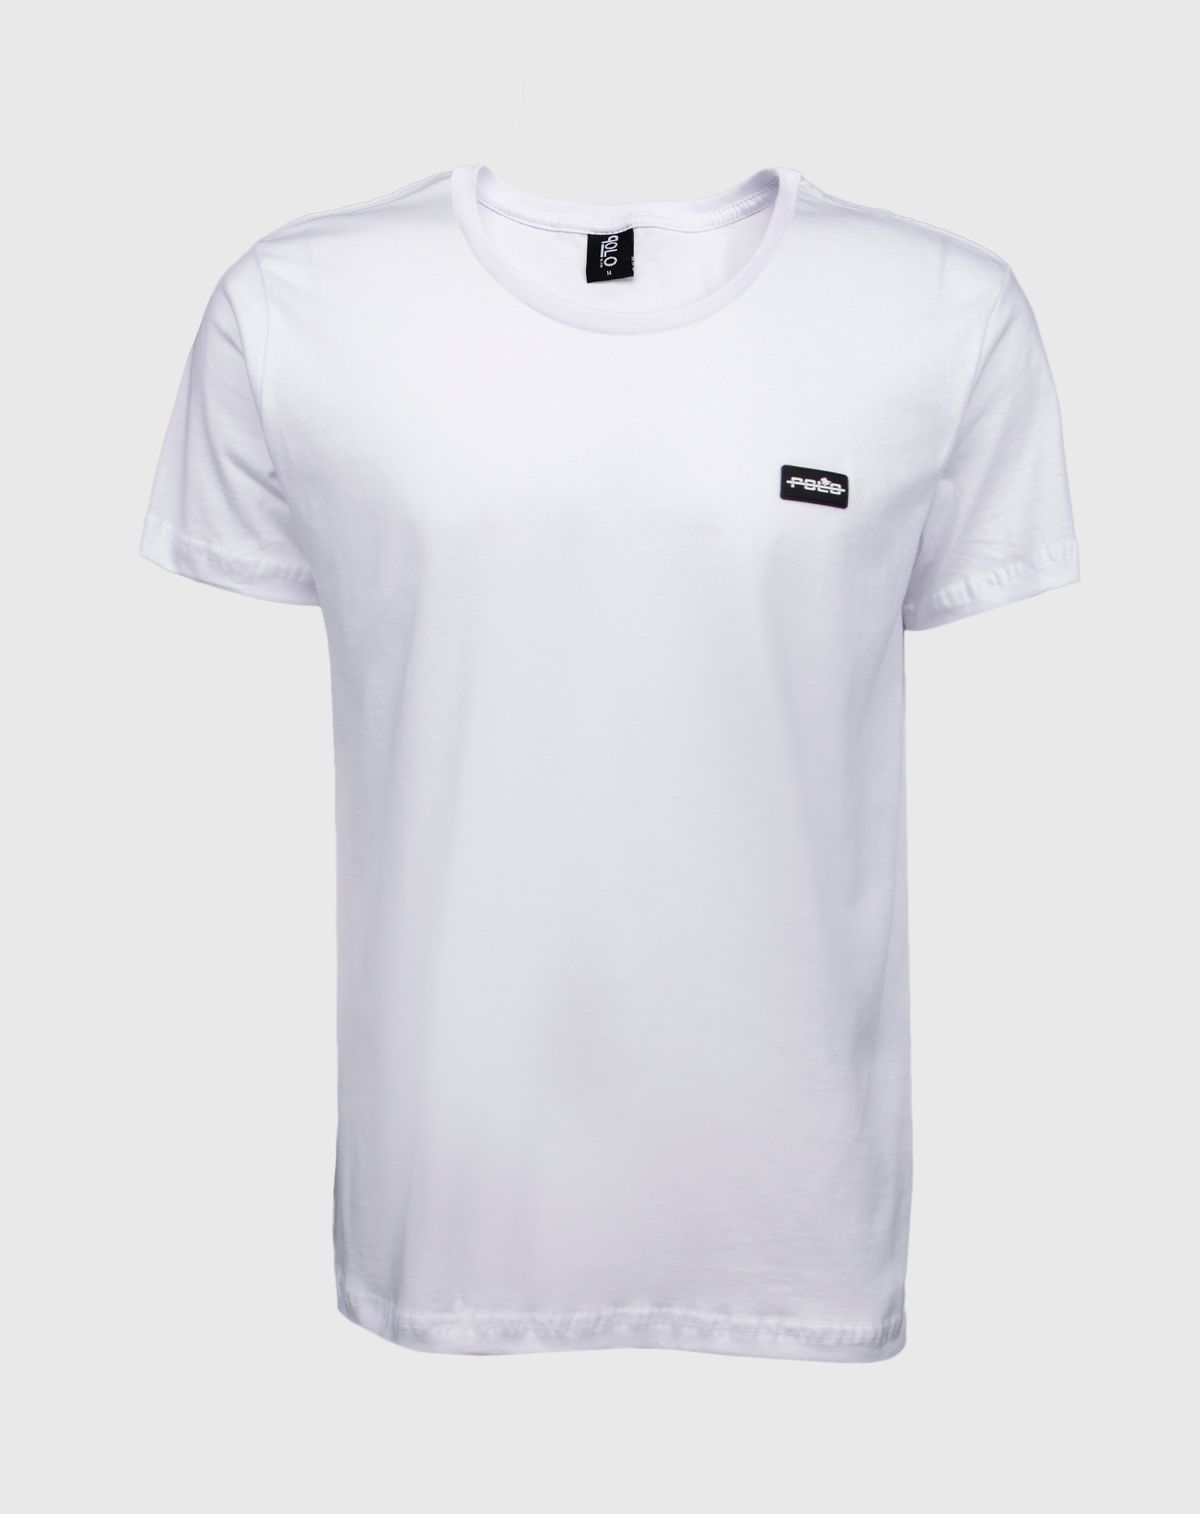 624484003-camiseta-manga-curta-masculina-estampa-polo-branco-g-f41